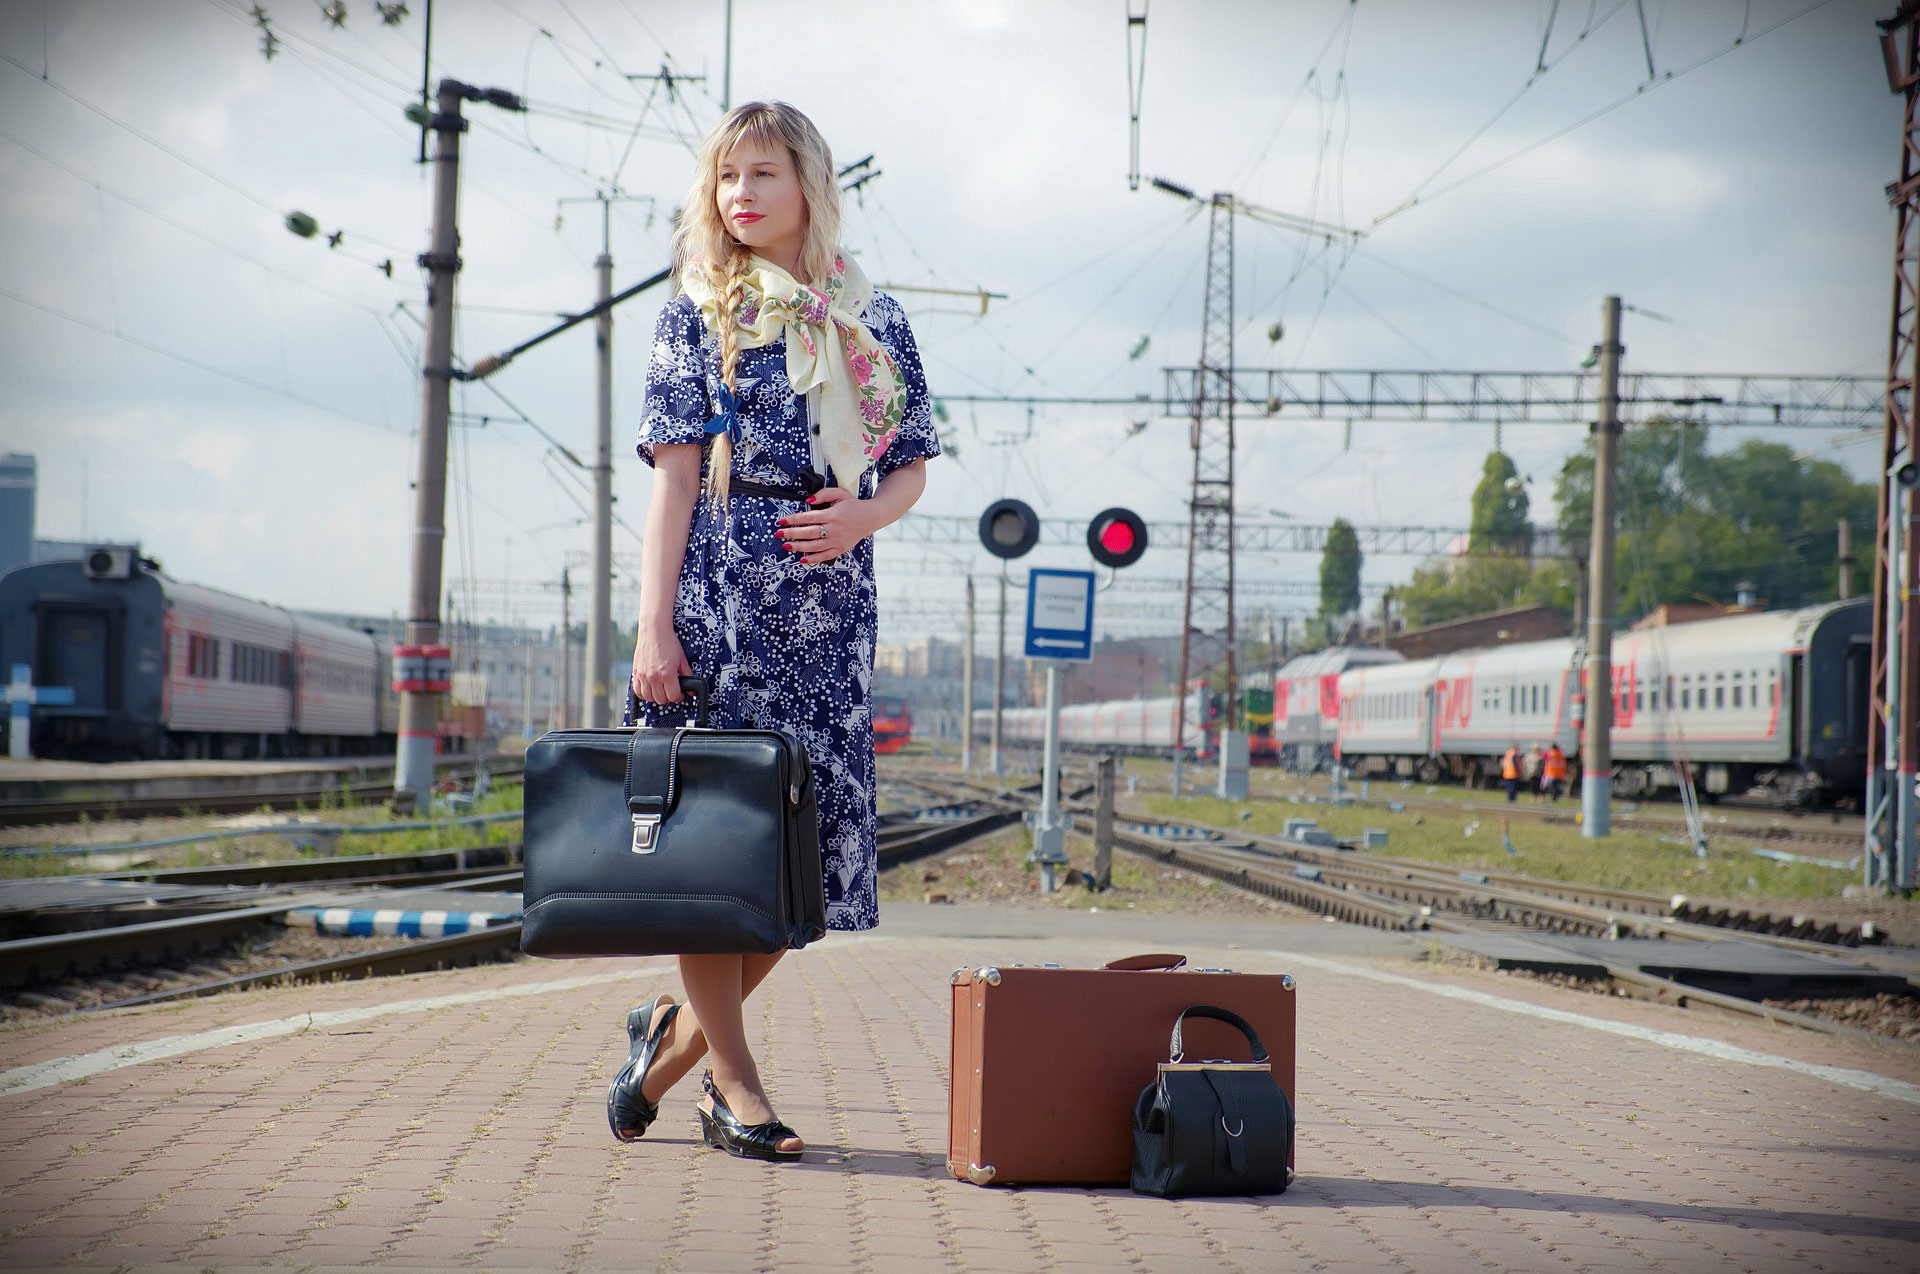 Mujer de pe en un anden ferroviario, con una maleta en la mano y otra a los pies